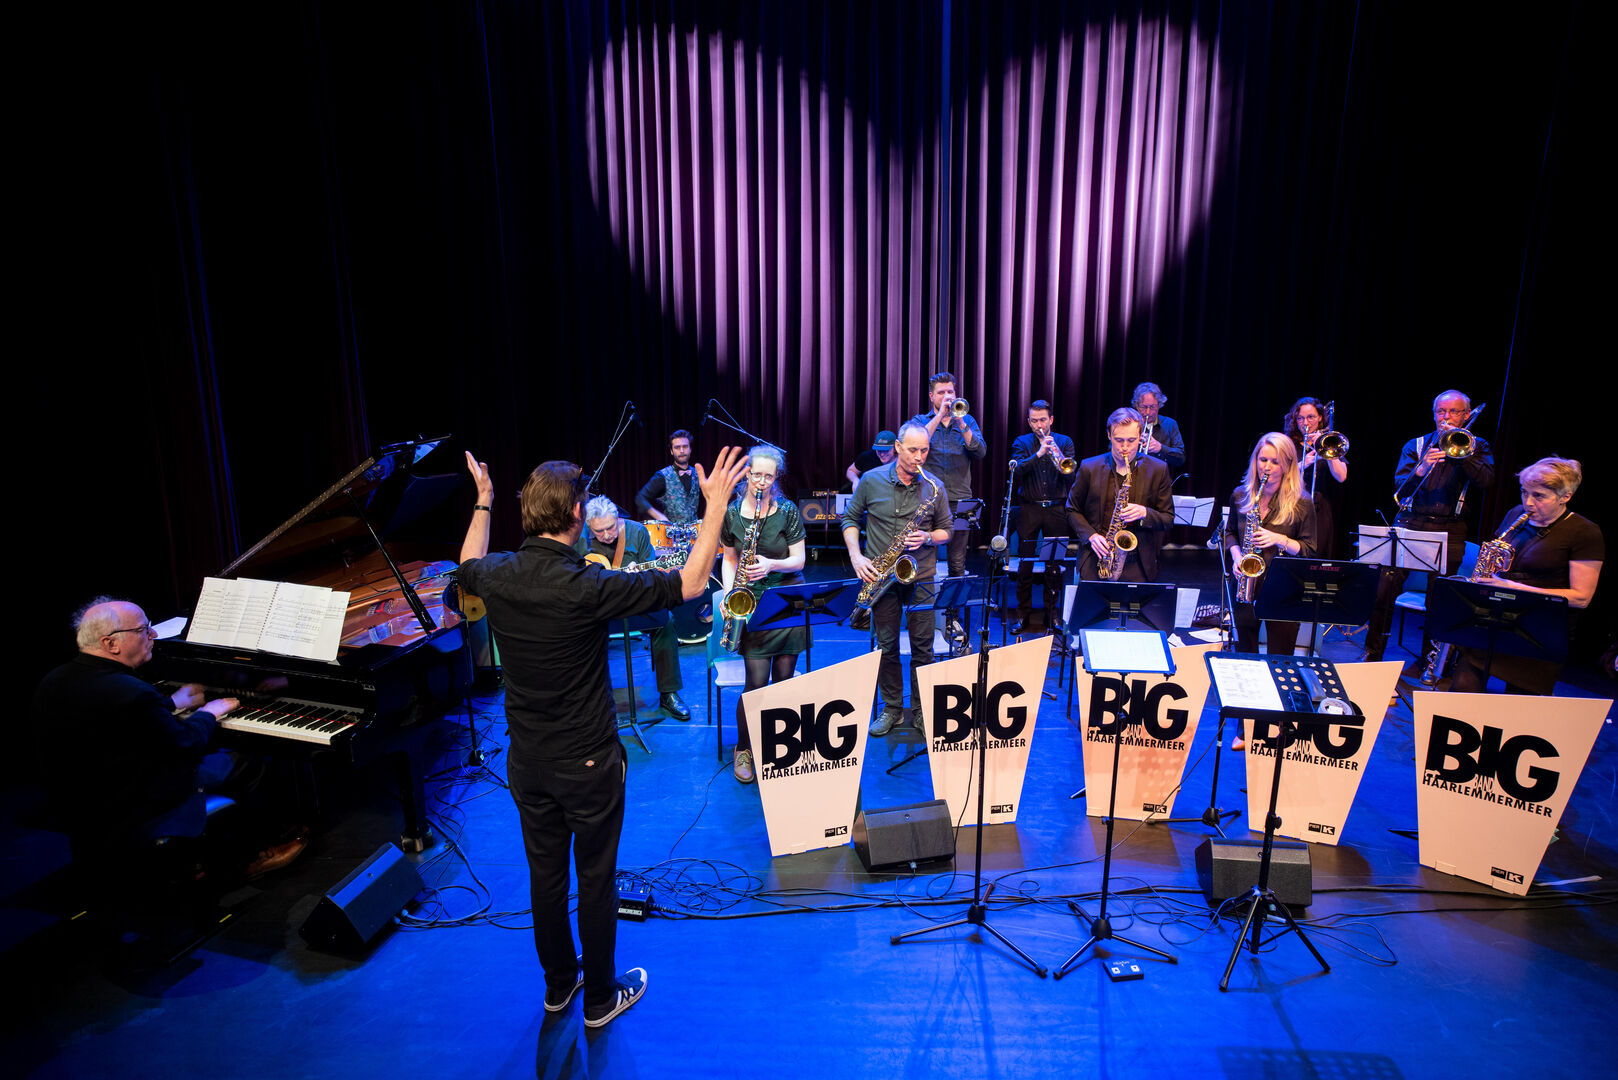 Repetitieconcert Big Band Haarlemmermeer